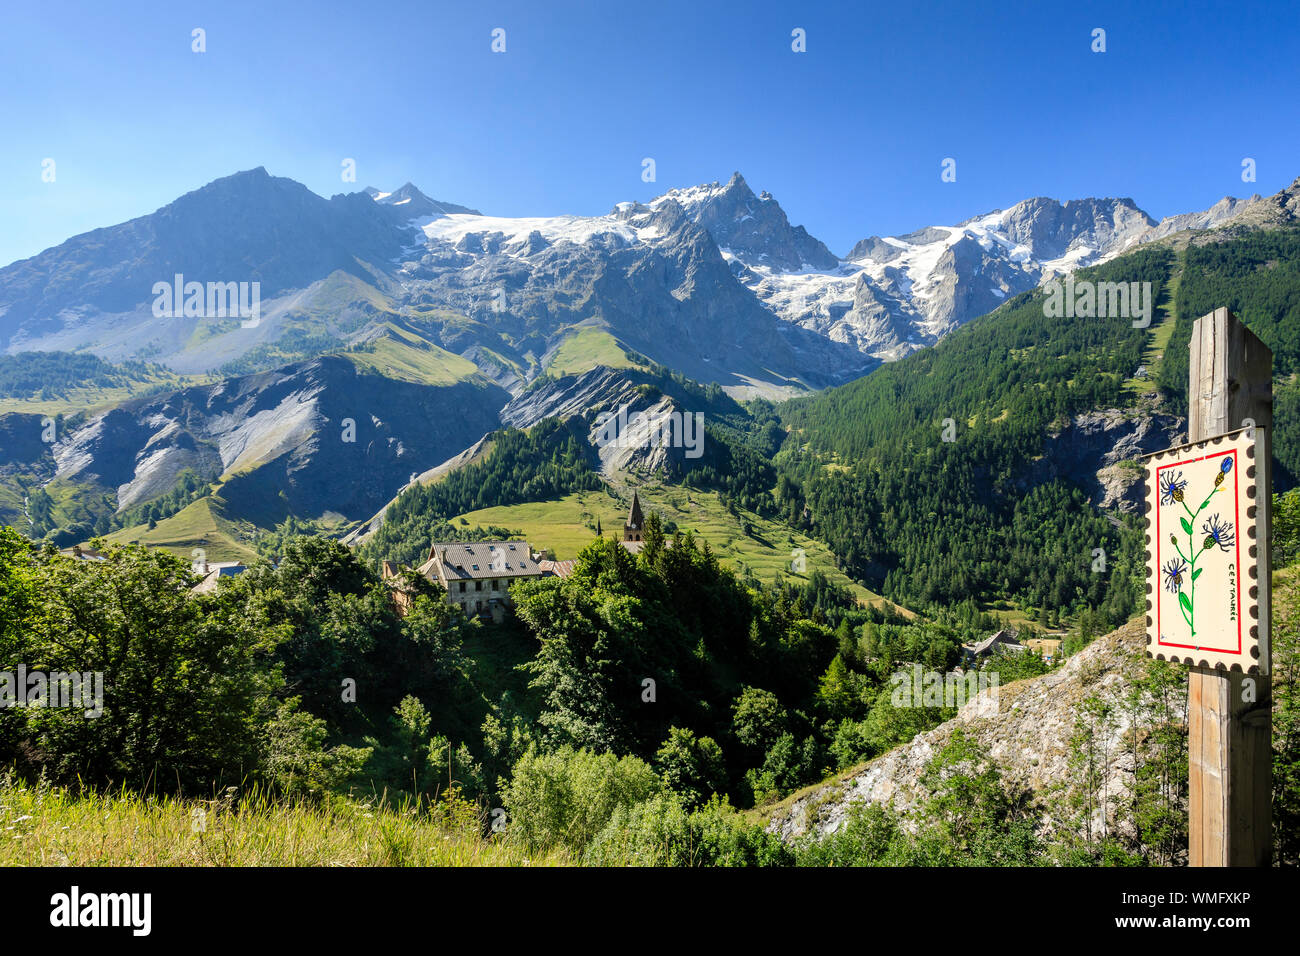 Frankreich, Hautes Alpes, Nationalpark Ecrins, Oisans, La Grave, bezeichnete die Schönsten Dörfer Frankreichs, Blick auf die Meije-massivs // Frankreich, Haut Stockfoto